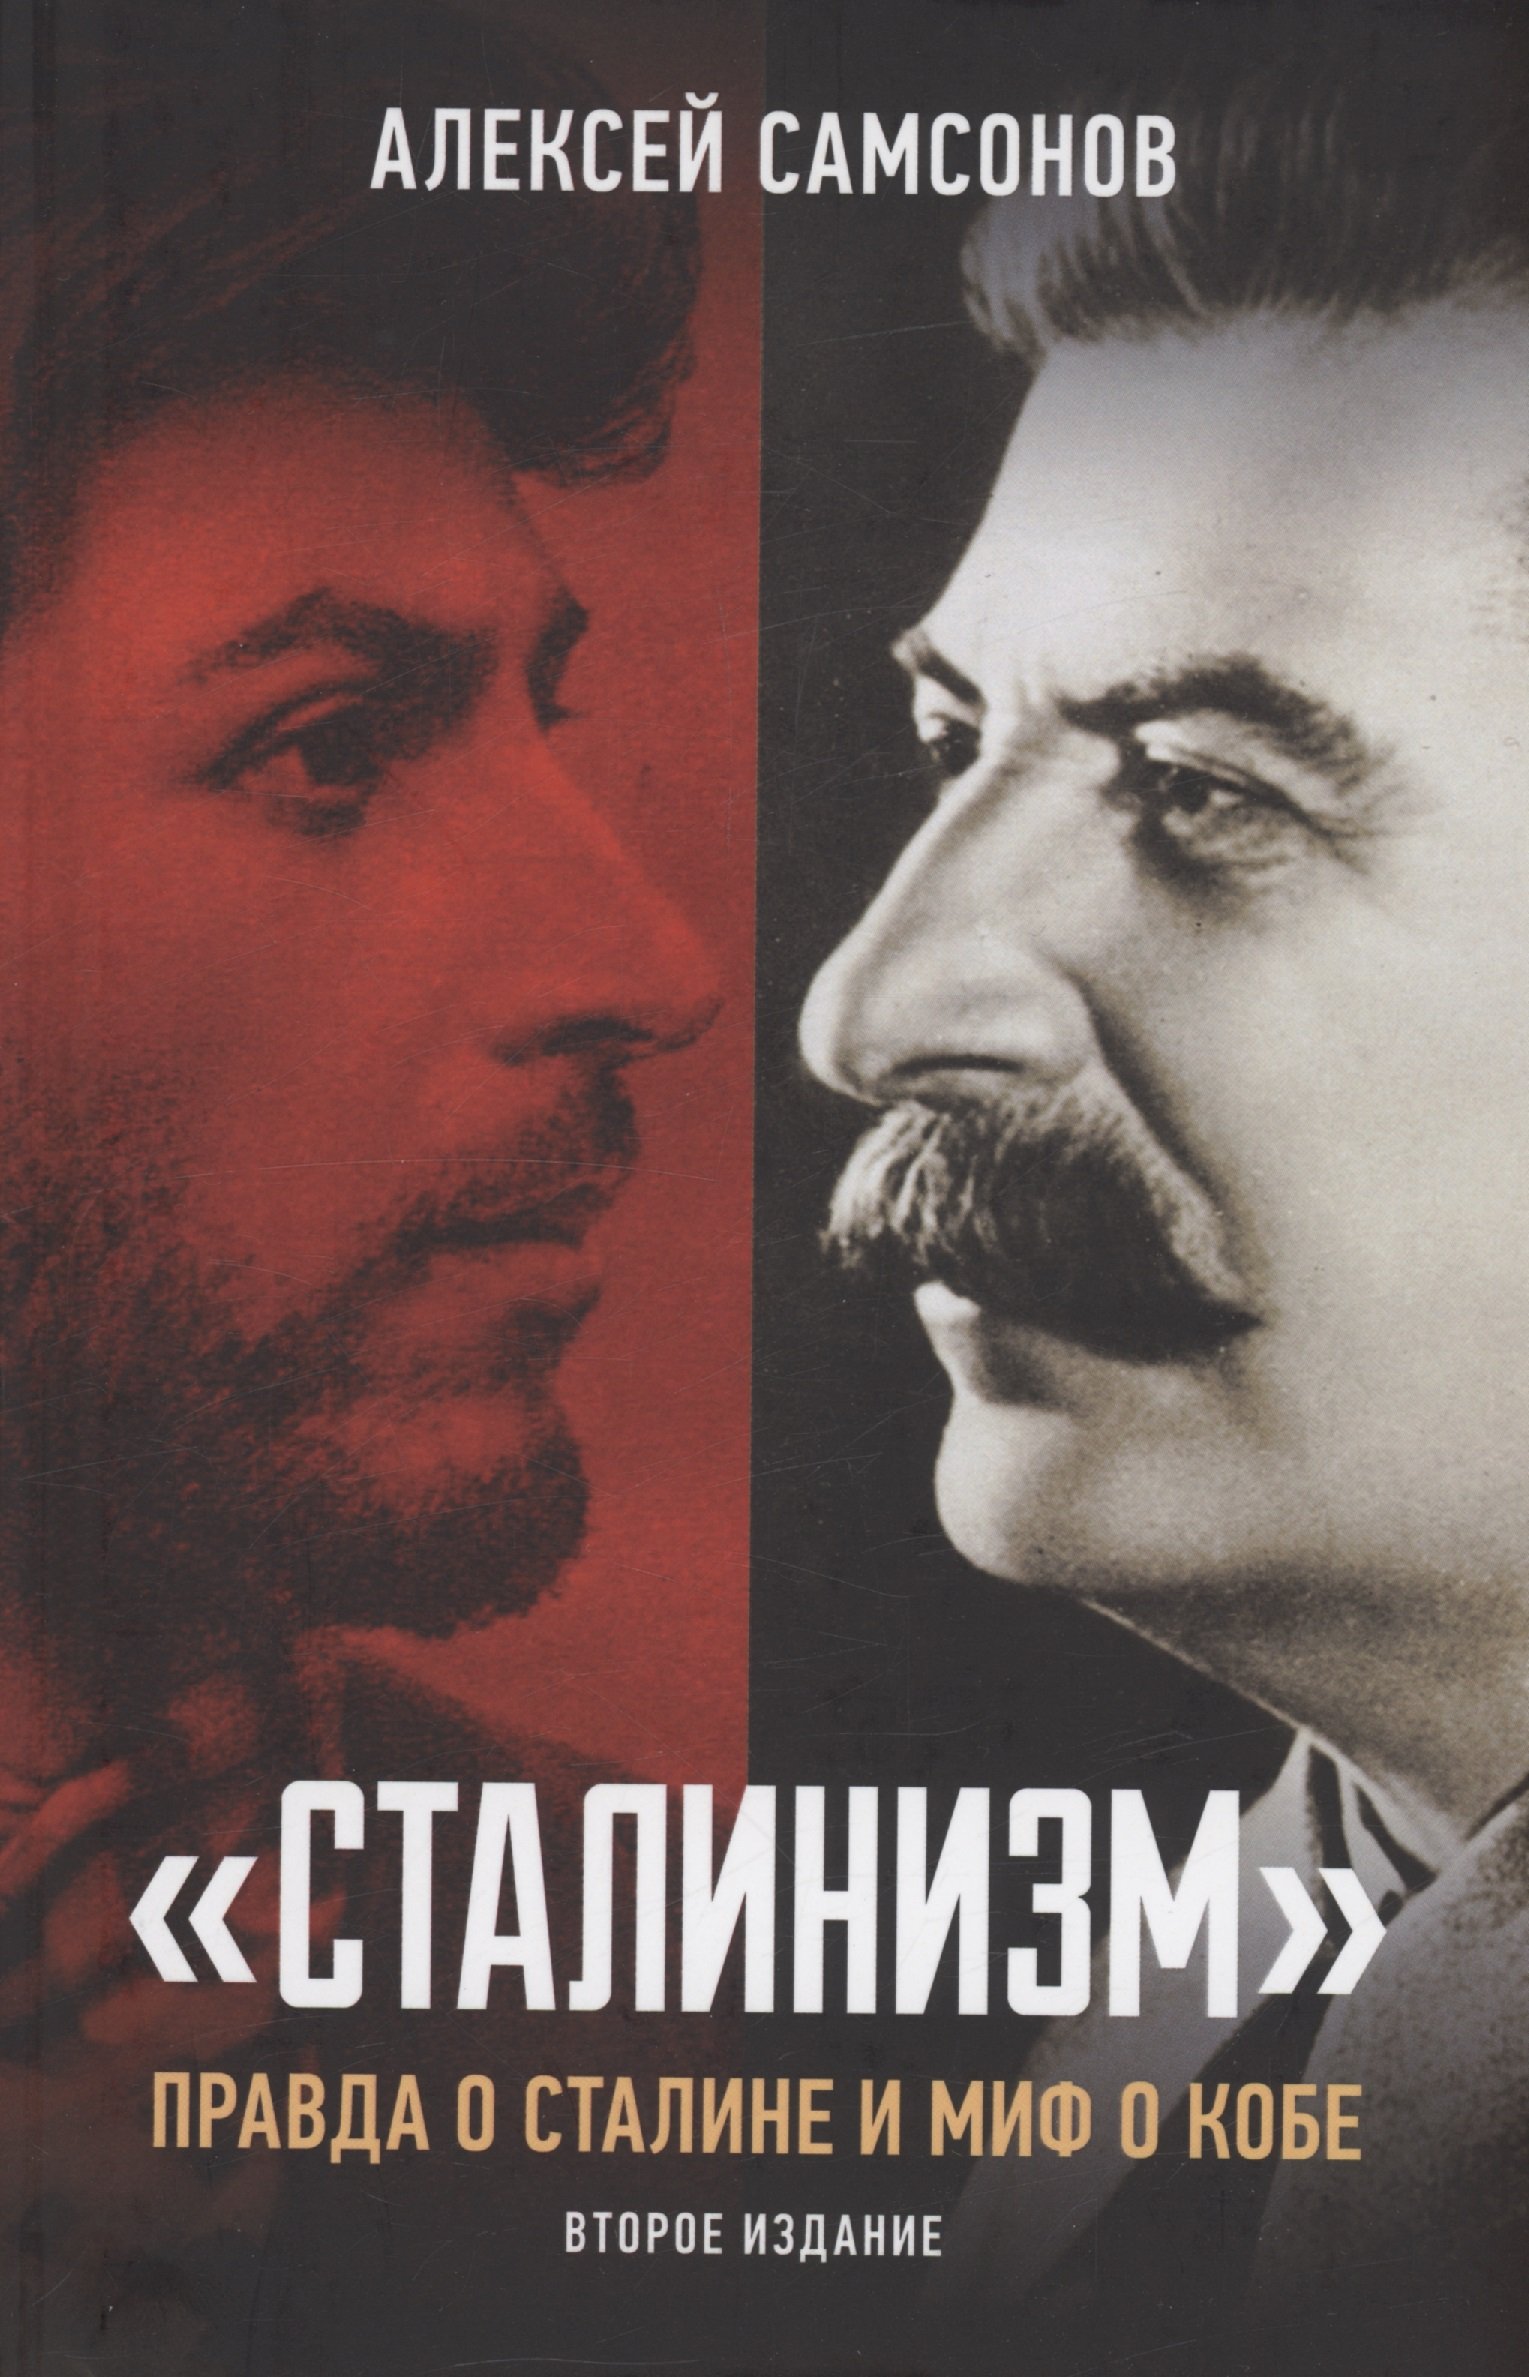 "Сталинизм": правда о Сталине и миф о Кобе